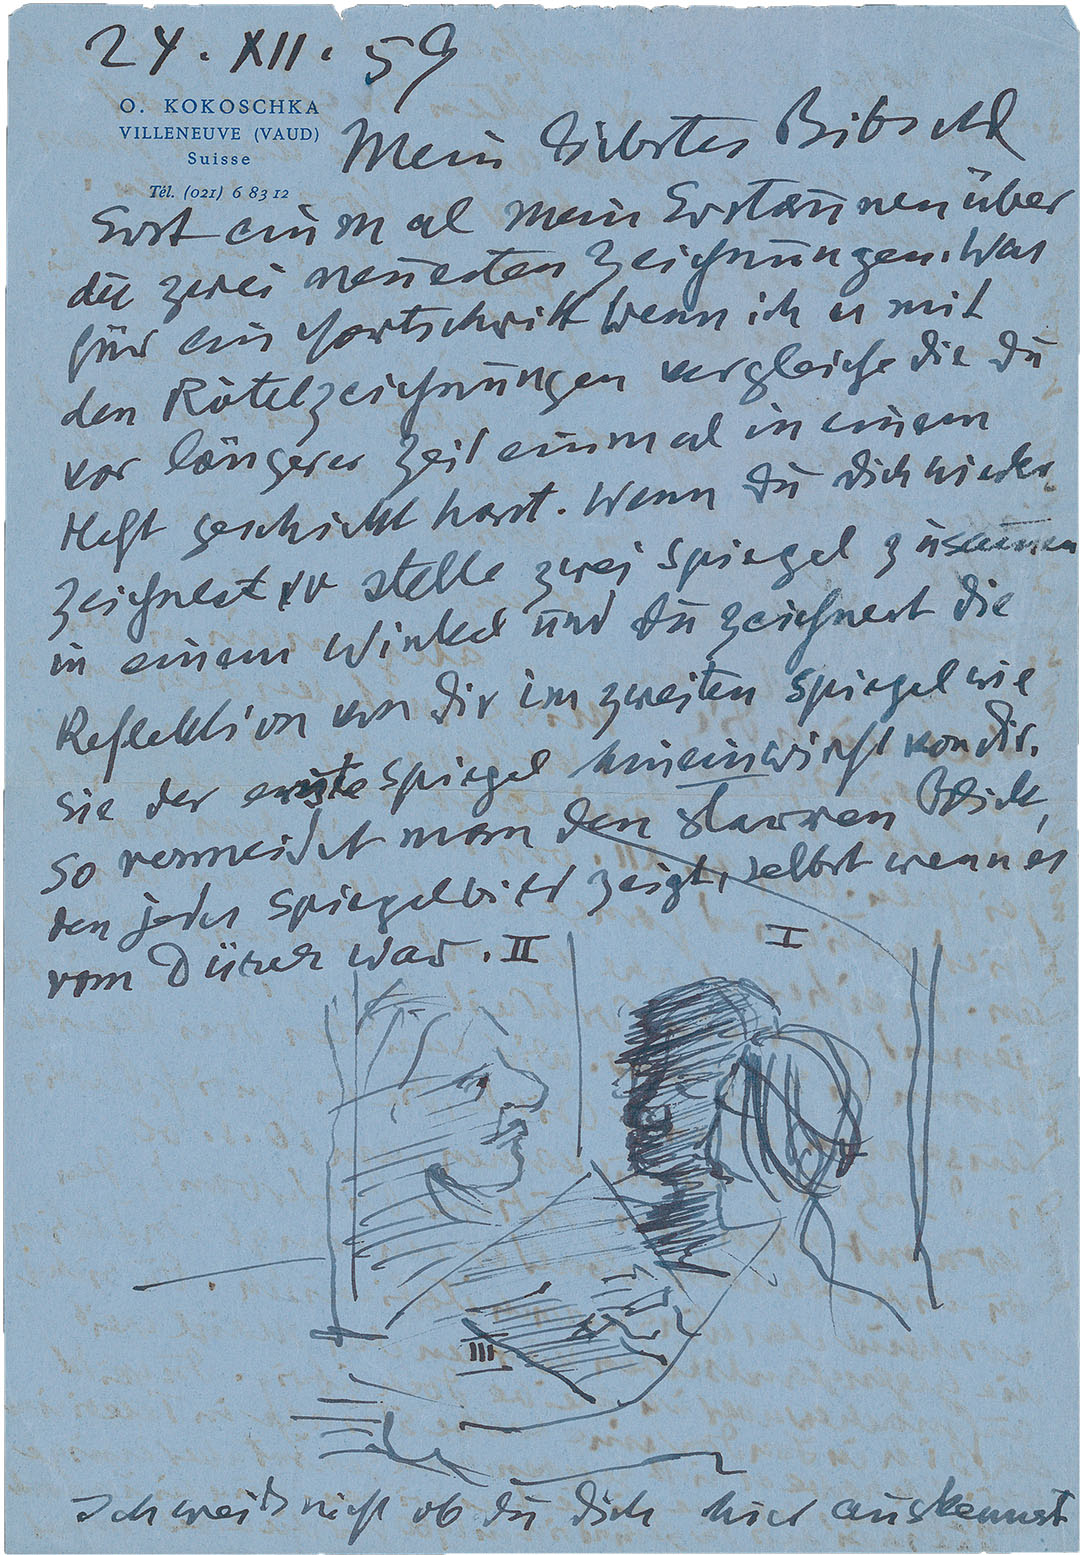 Kokoschka versah Briefe an seine Familie und seine Freunde oft mit witzigen Zeichnungen. Hier erklärt er seiner Schwester Berta (Bibschl) Patocka den Trick mit zwei Spiegeln für ein gelungenes Selbstporträt. Dezember 1959 (ZBZ, Nachl. O. Kokoschka 24.8)